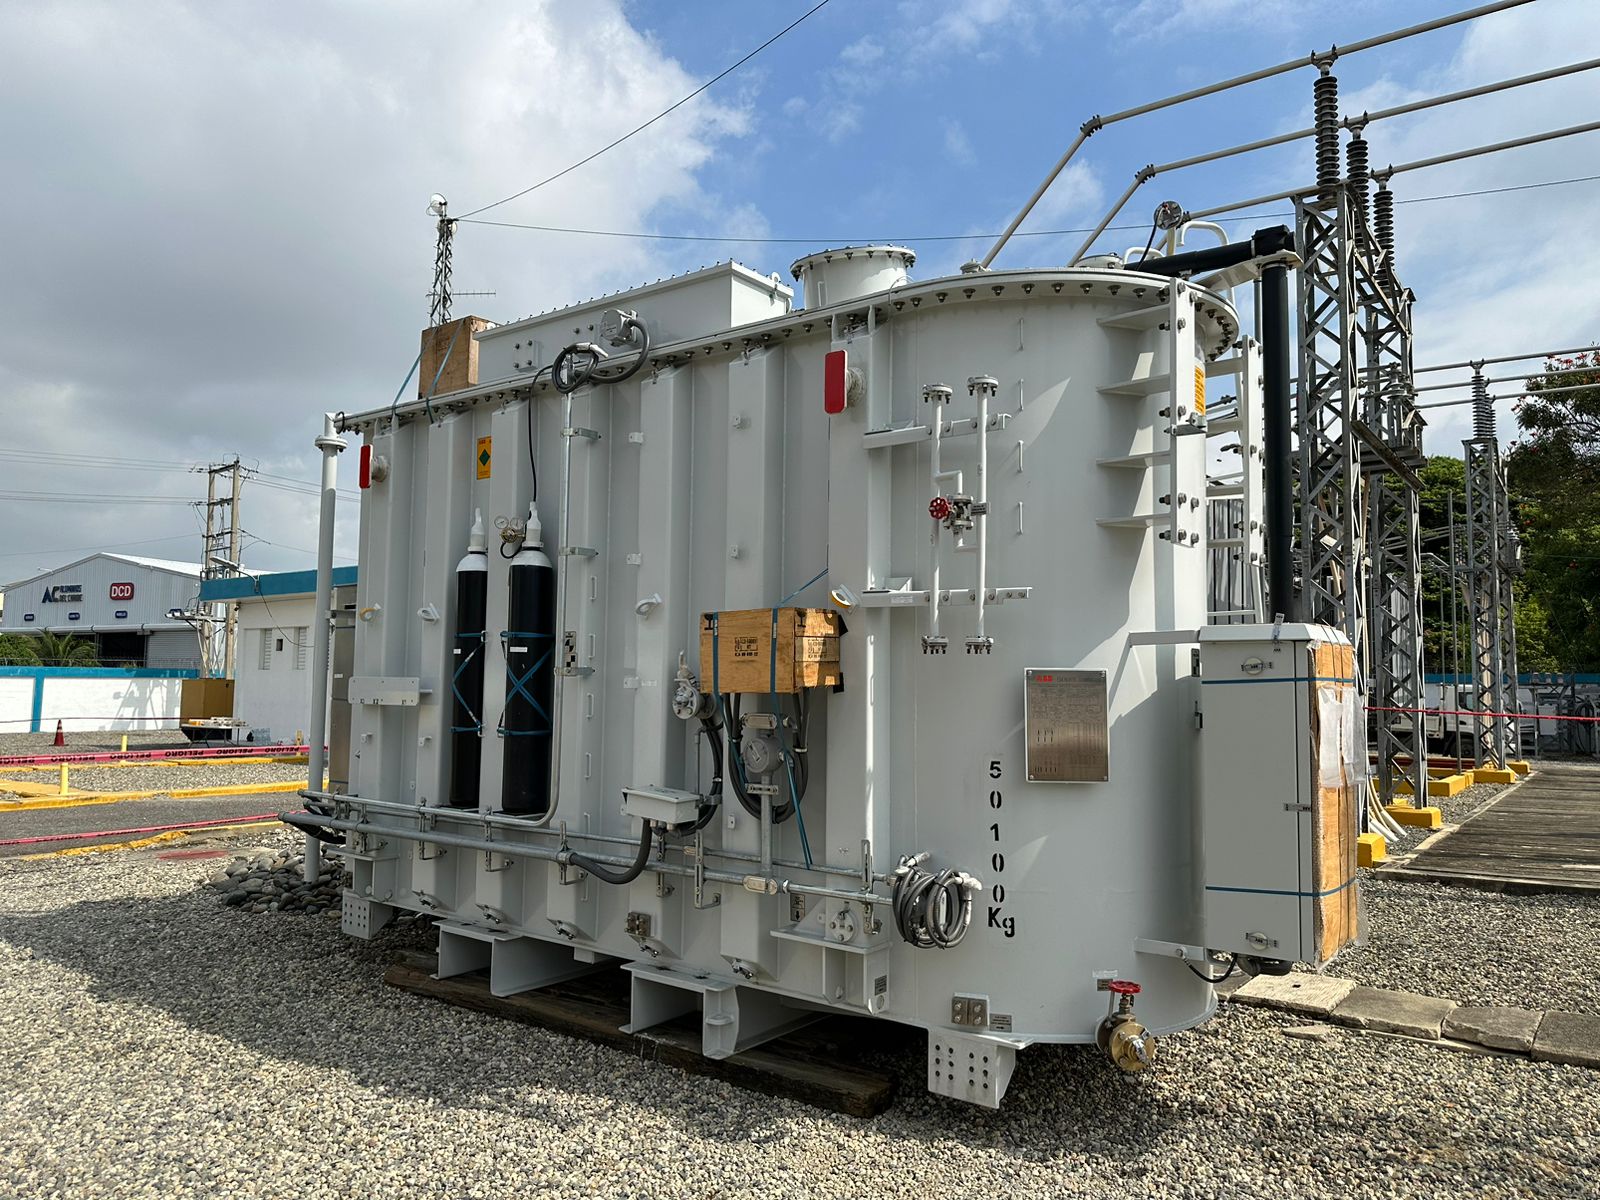 REPÚBLICA DOMINICANA: Edenorte instalará tres transformadores de potencia para mejorar servicio en el Cibao